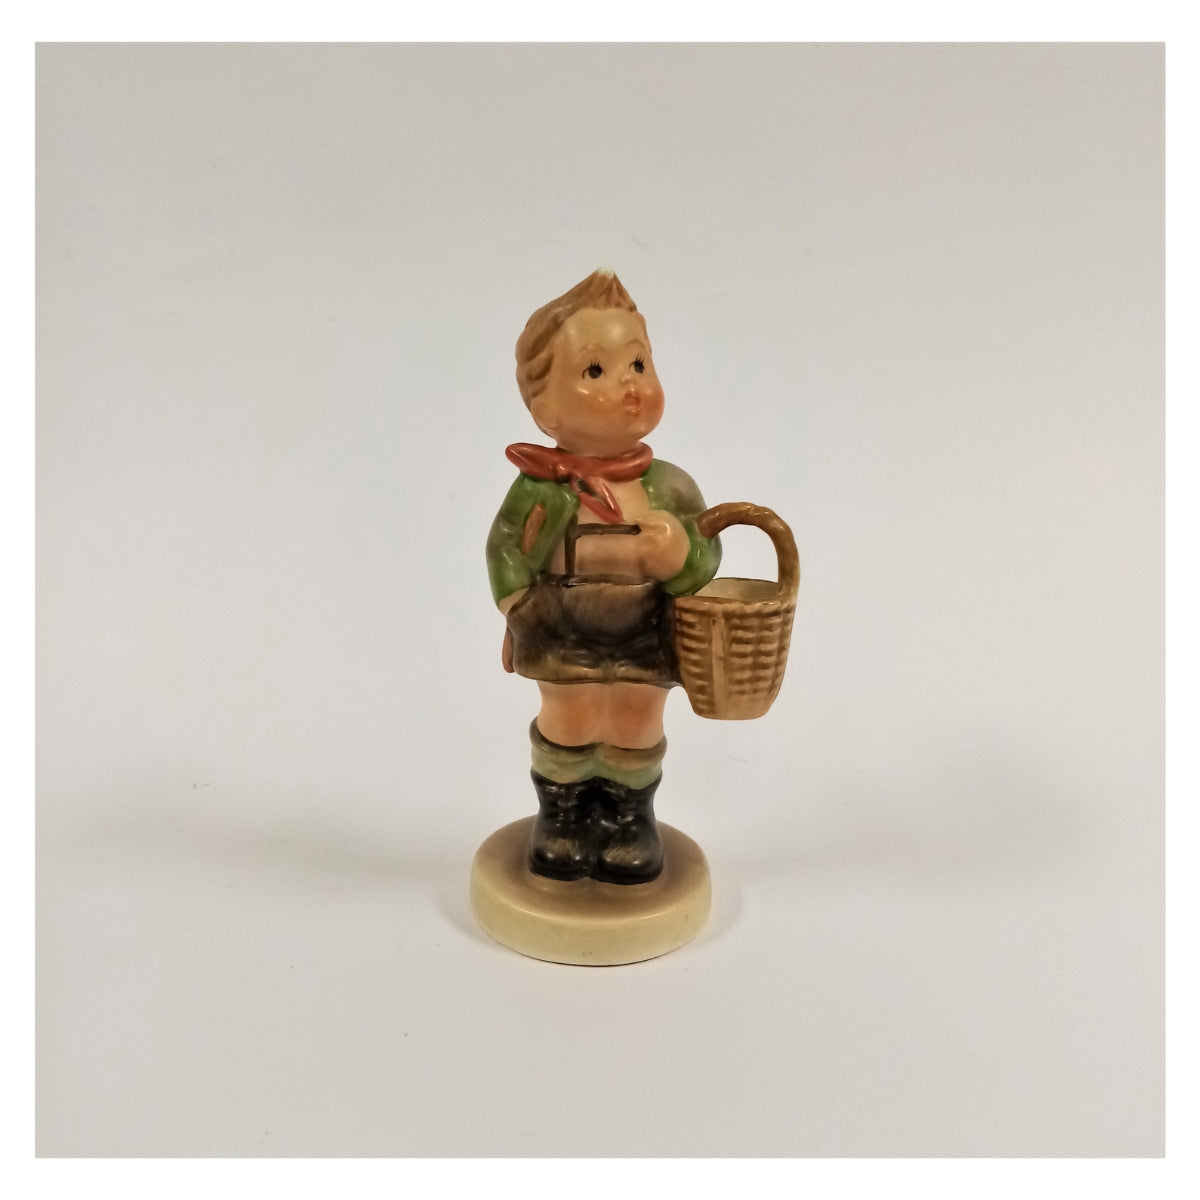 Hummel Figurine- Village Boy